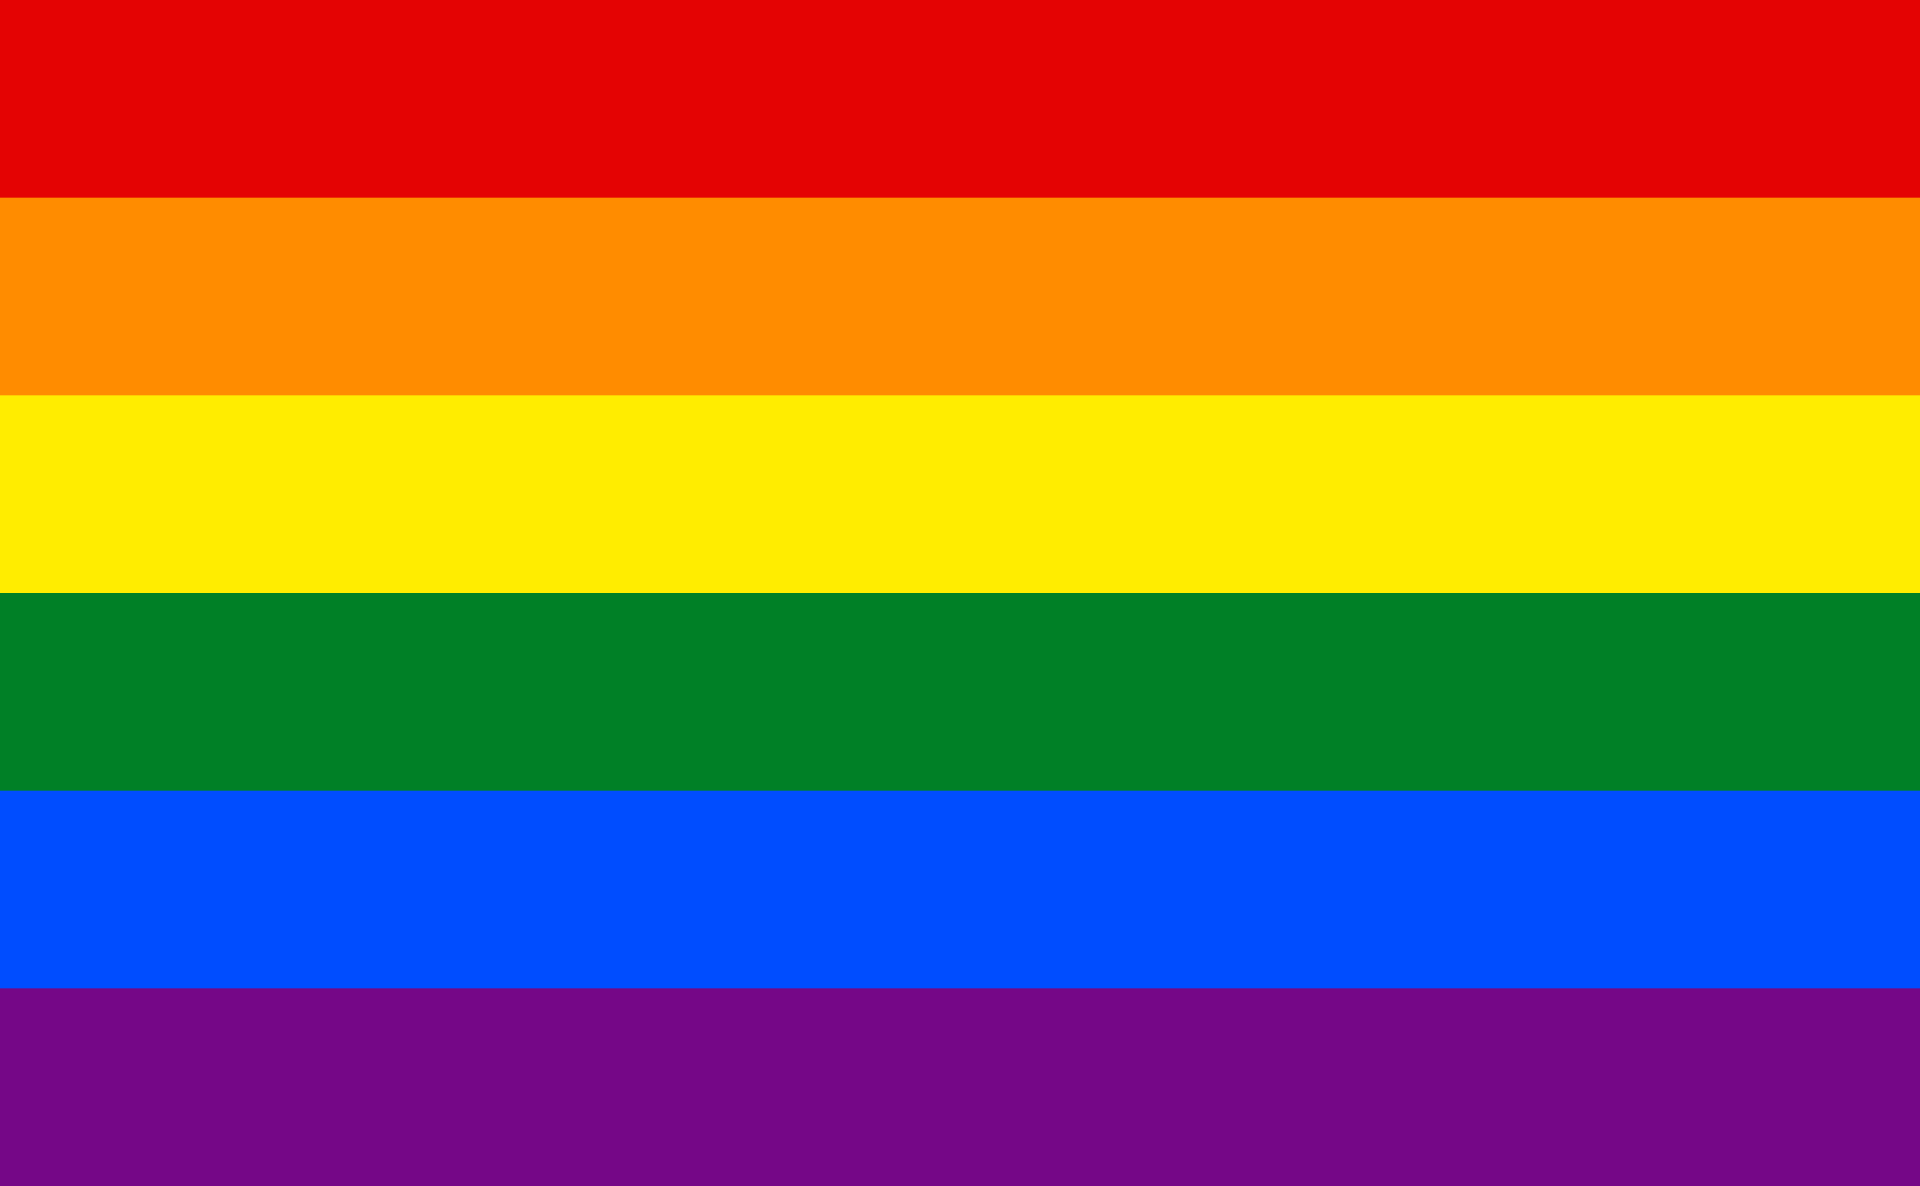 The LGBT rainbow flag